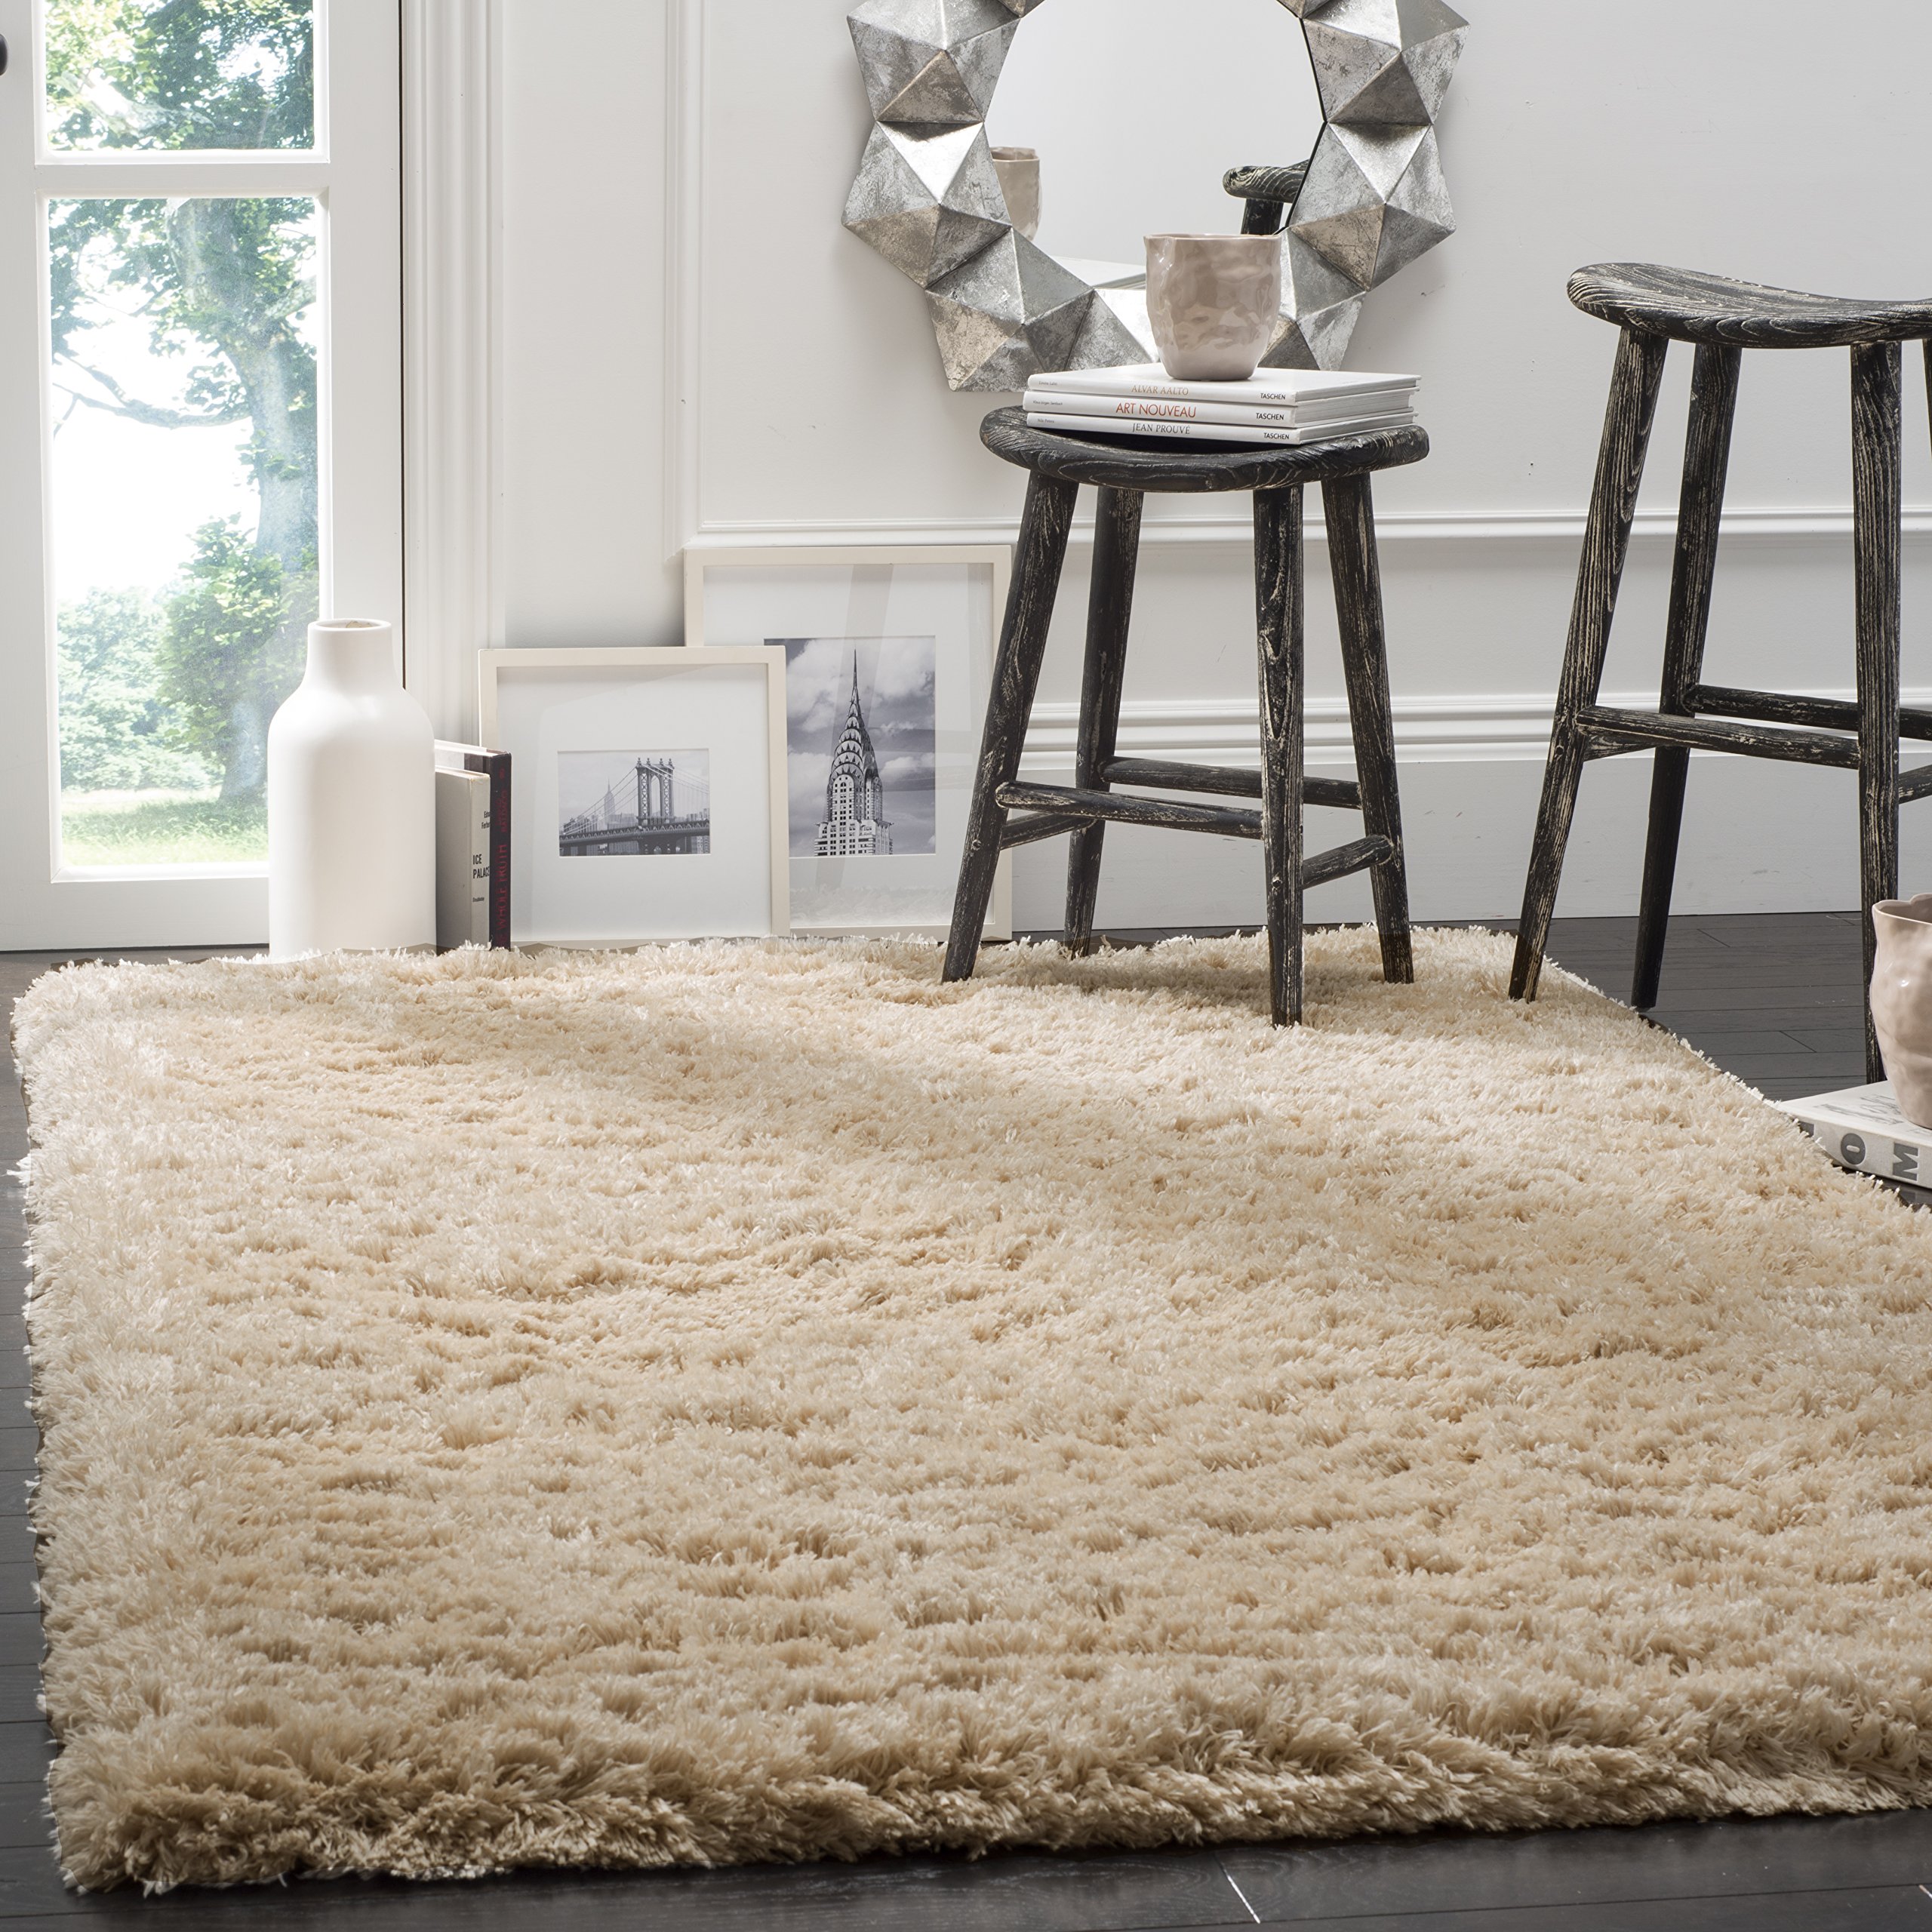  Safavieh Polar Shag 系列小地毯 - 6 英尺 7 英尺 x 9 英尺 2 英尺，浅米色，纯色迷人设计，不脱落且易于护理，3 英寸厚，非常适合客厅、卧室的人流密集区域...